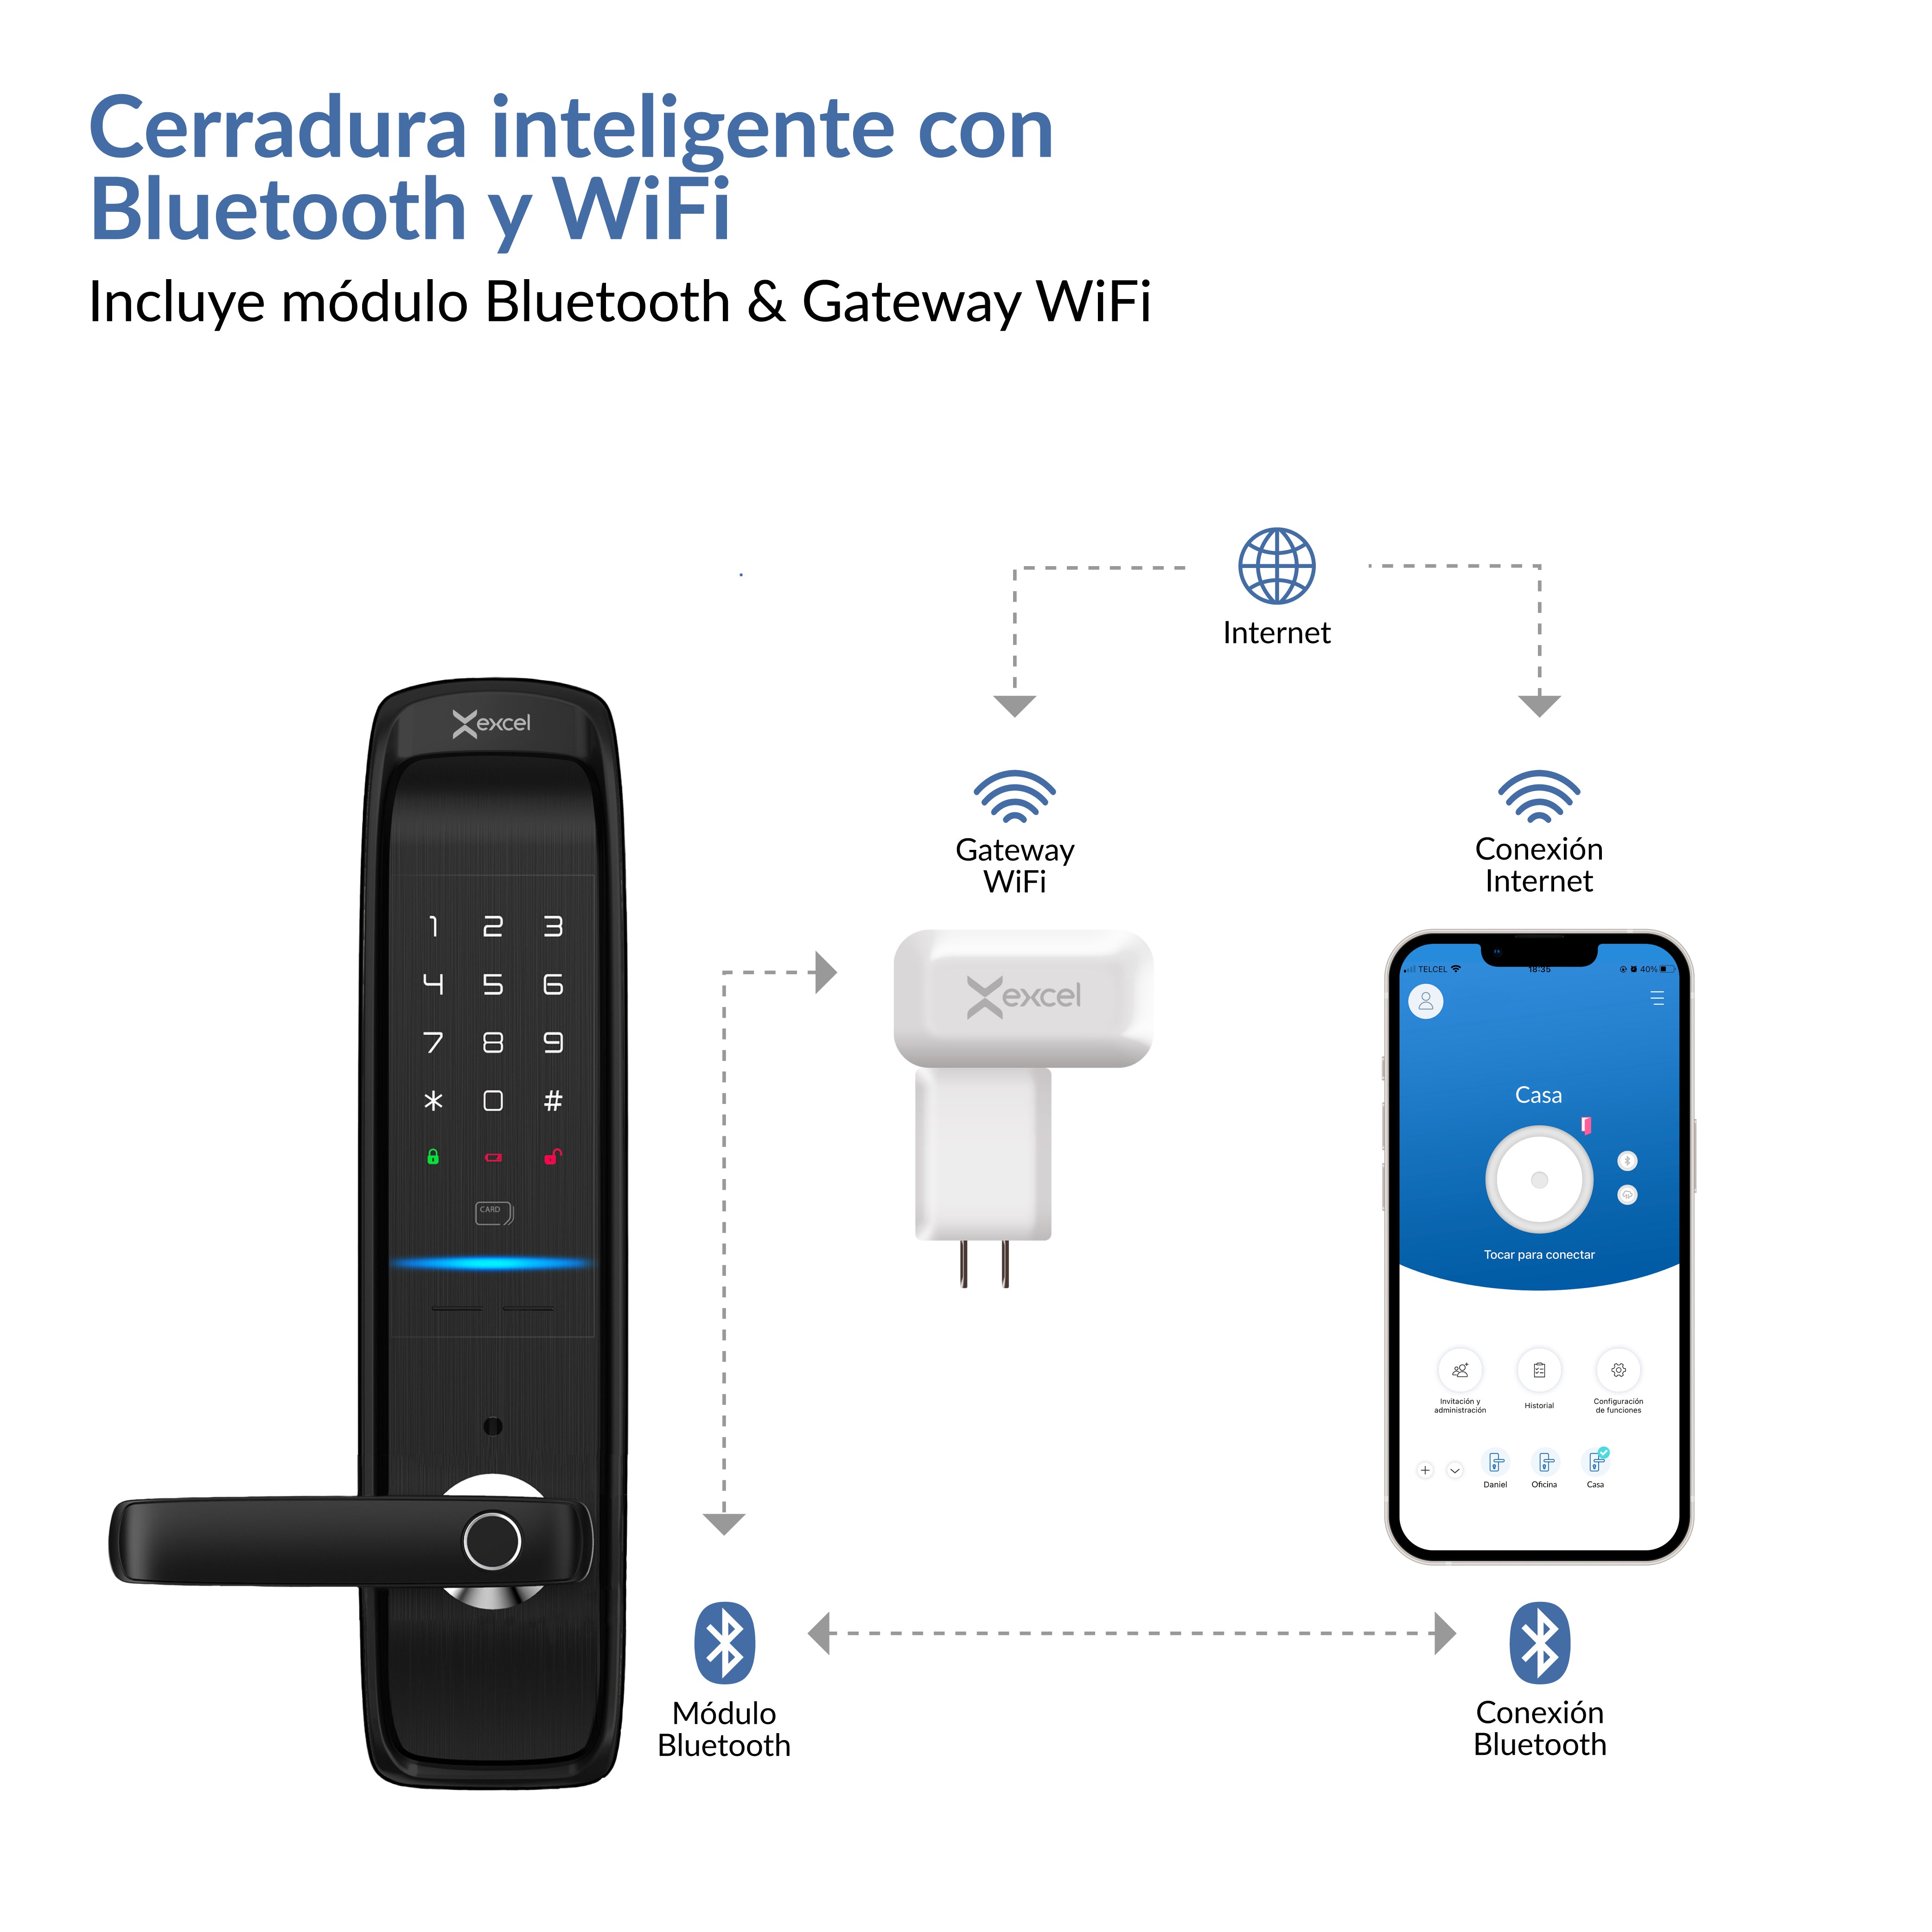 Cerradura inteligente Excel SL520 con conectividad Bluetooth y WiFi. Gateway WiFi.